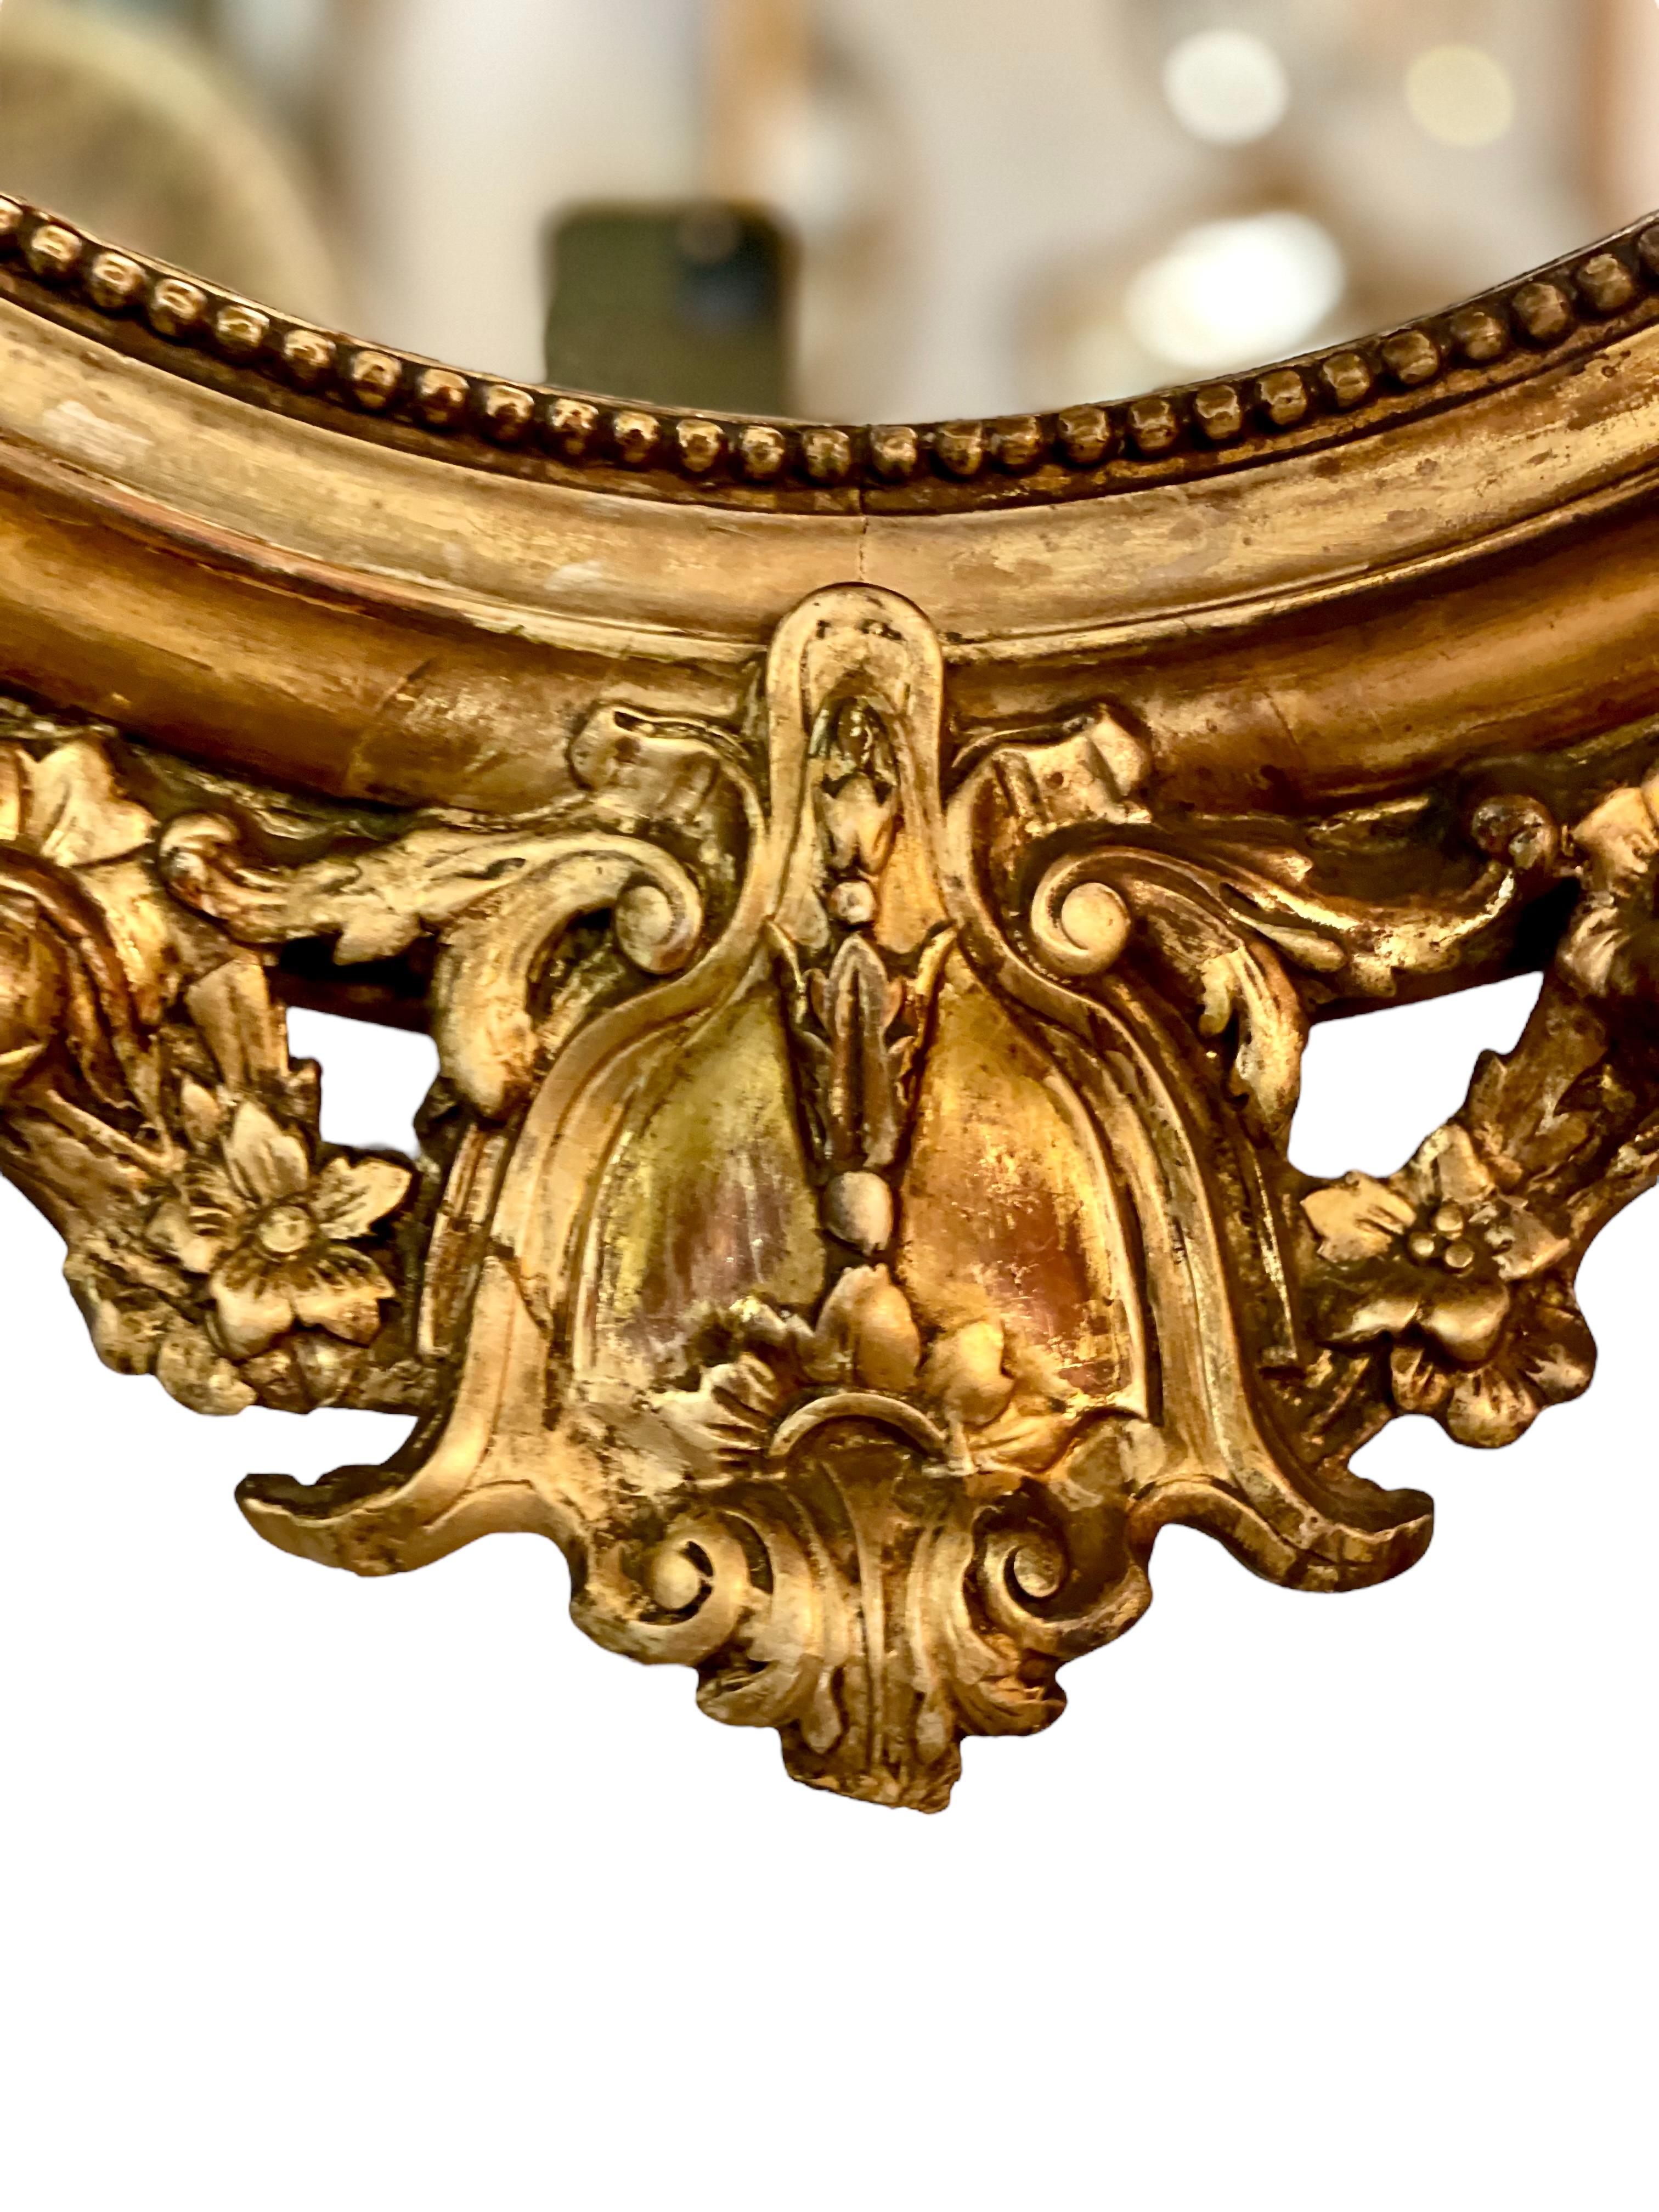 Miroir ovale en bois et plâtre doré, datant de la fin du 19e siècle. Ce superbe miroir ancien présente un fronton complexe en forme de médaillon avec un miroir ovale miniature, flanqué de chaque côté de beaux chérubins ailés et de guirlandes de